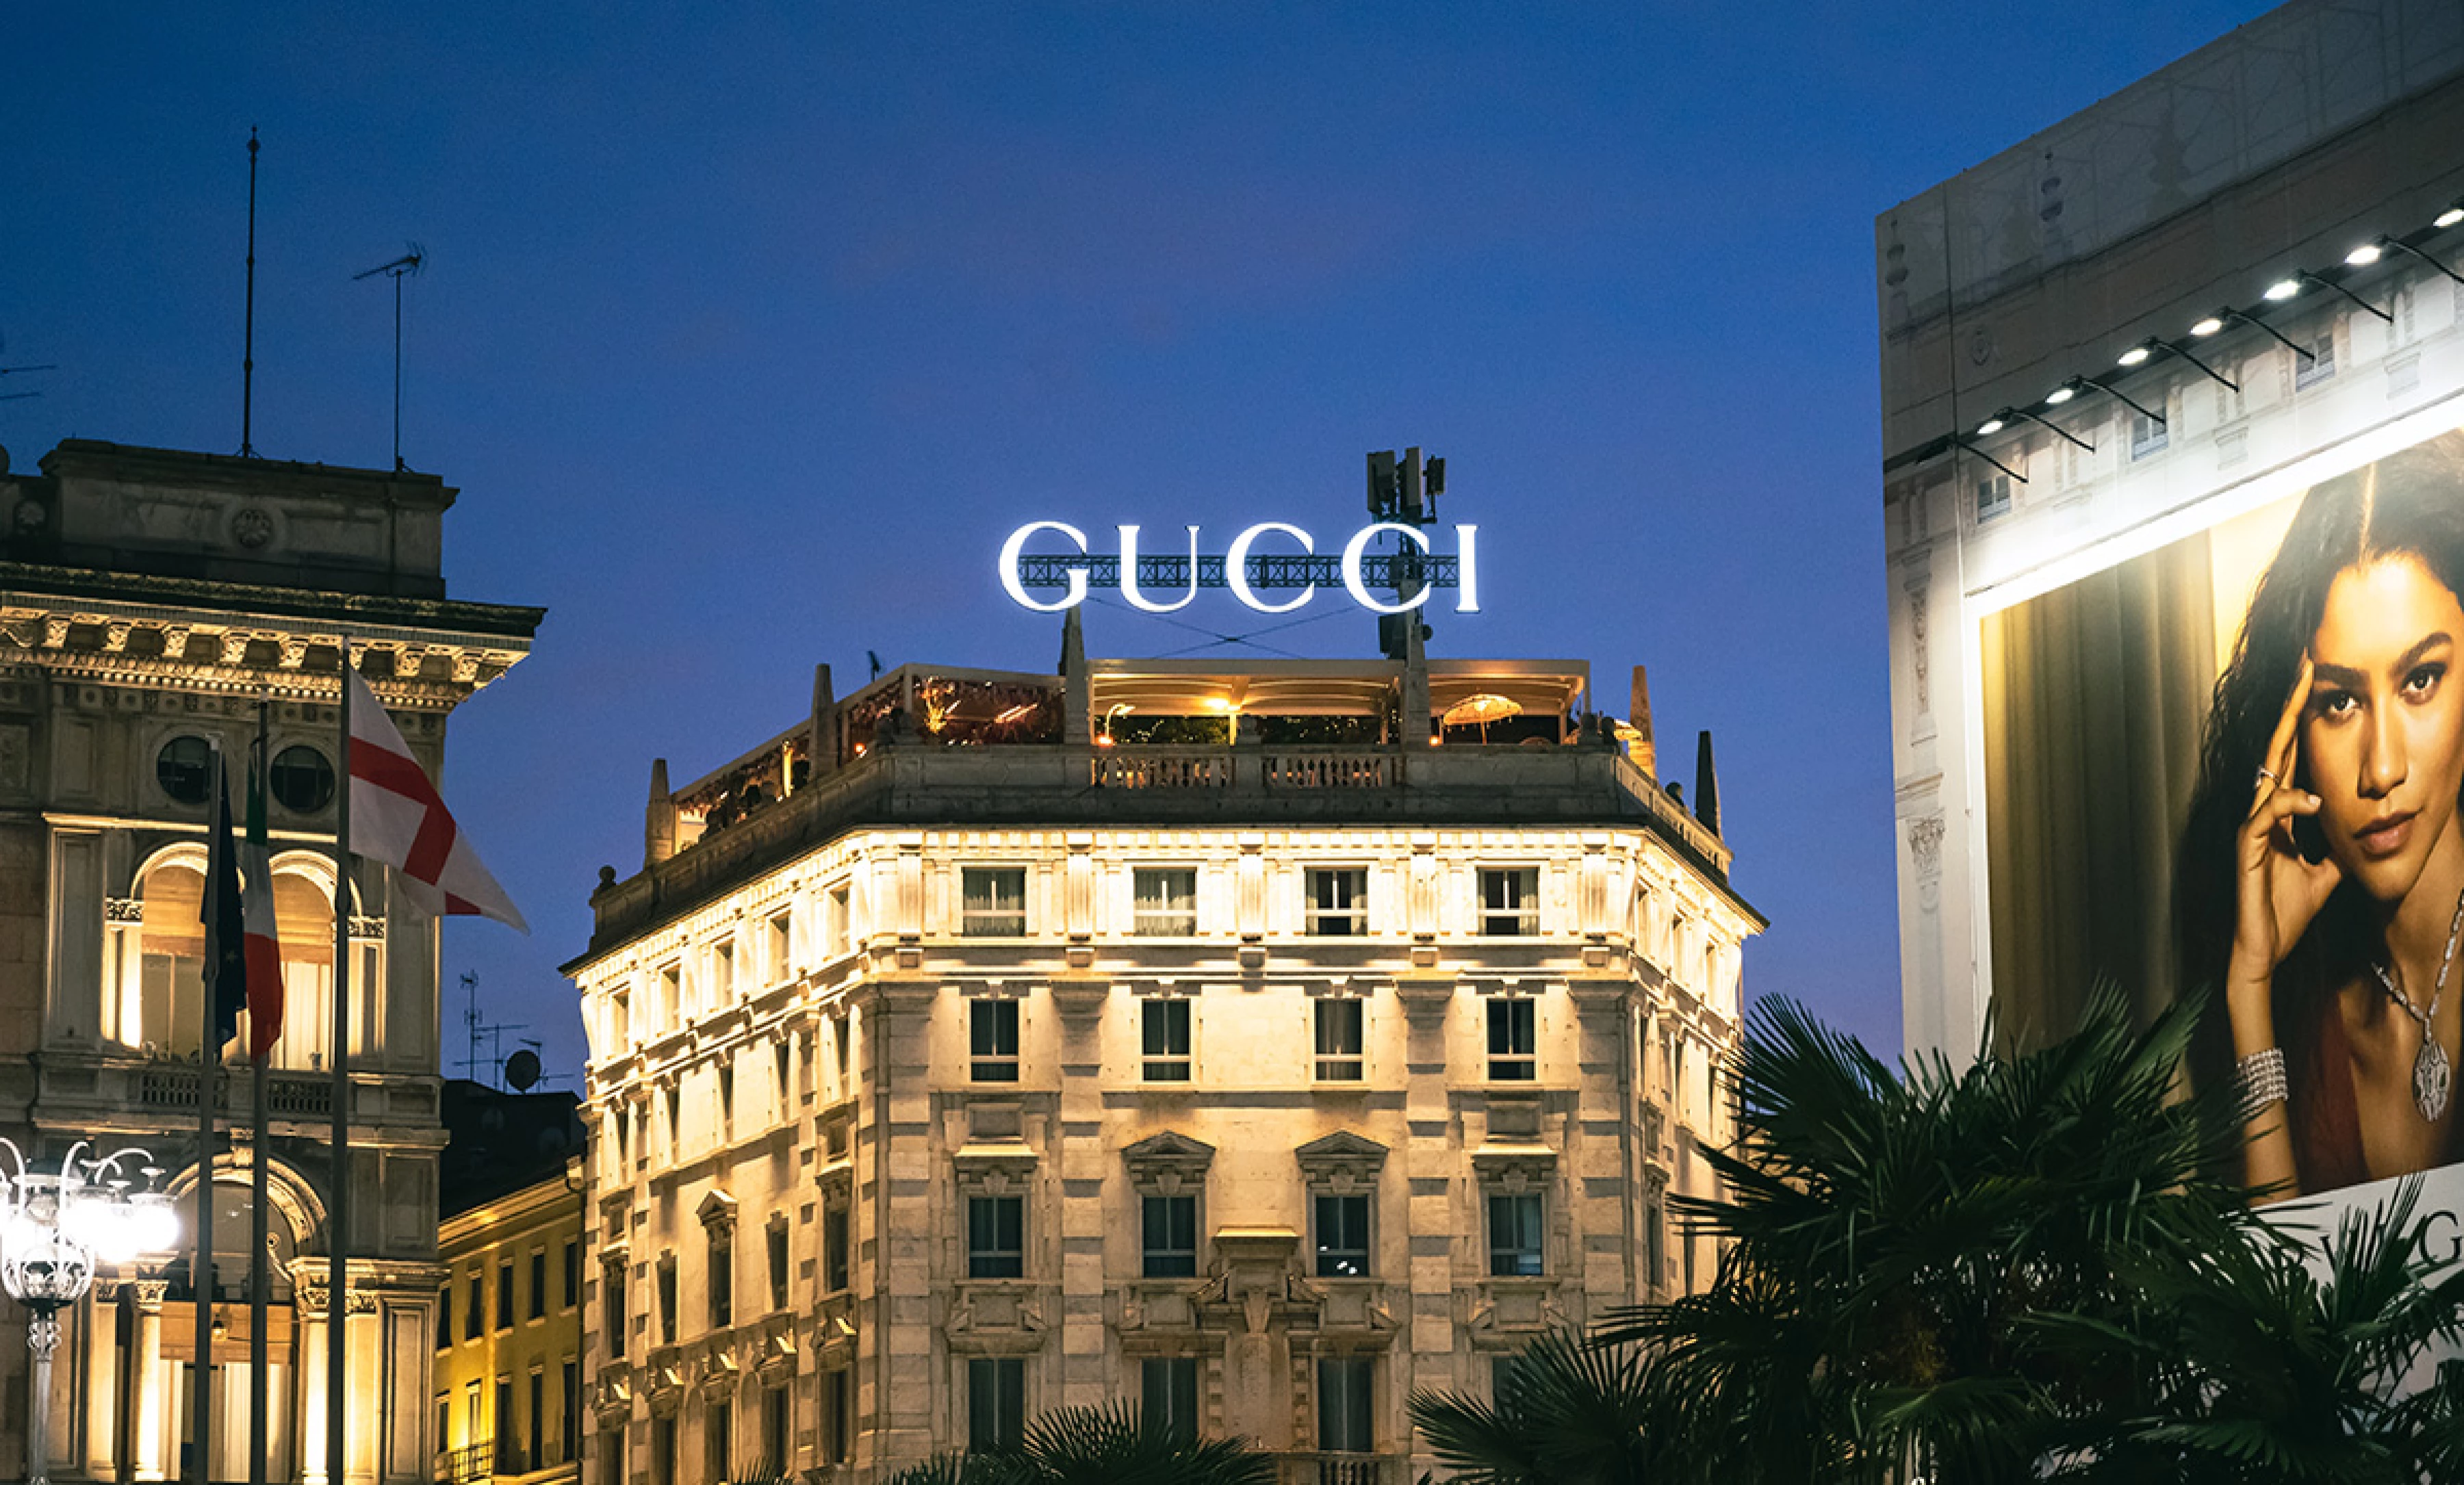 Gucci se suma a la carrera del lujo y aceptará pago en criptomonedas